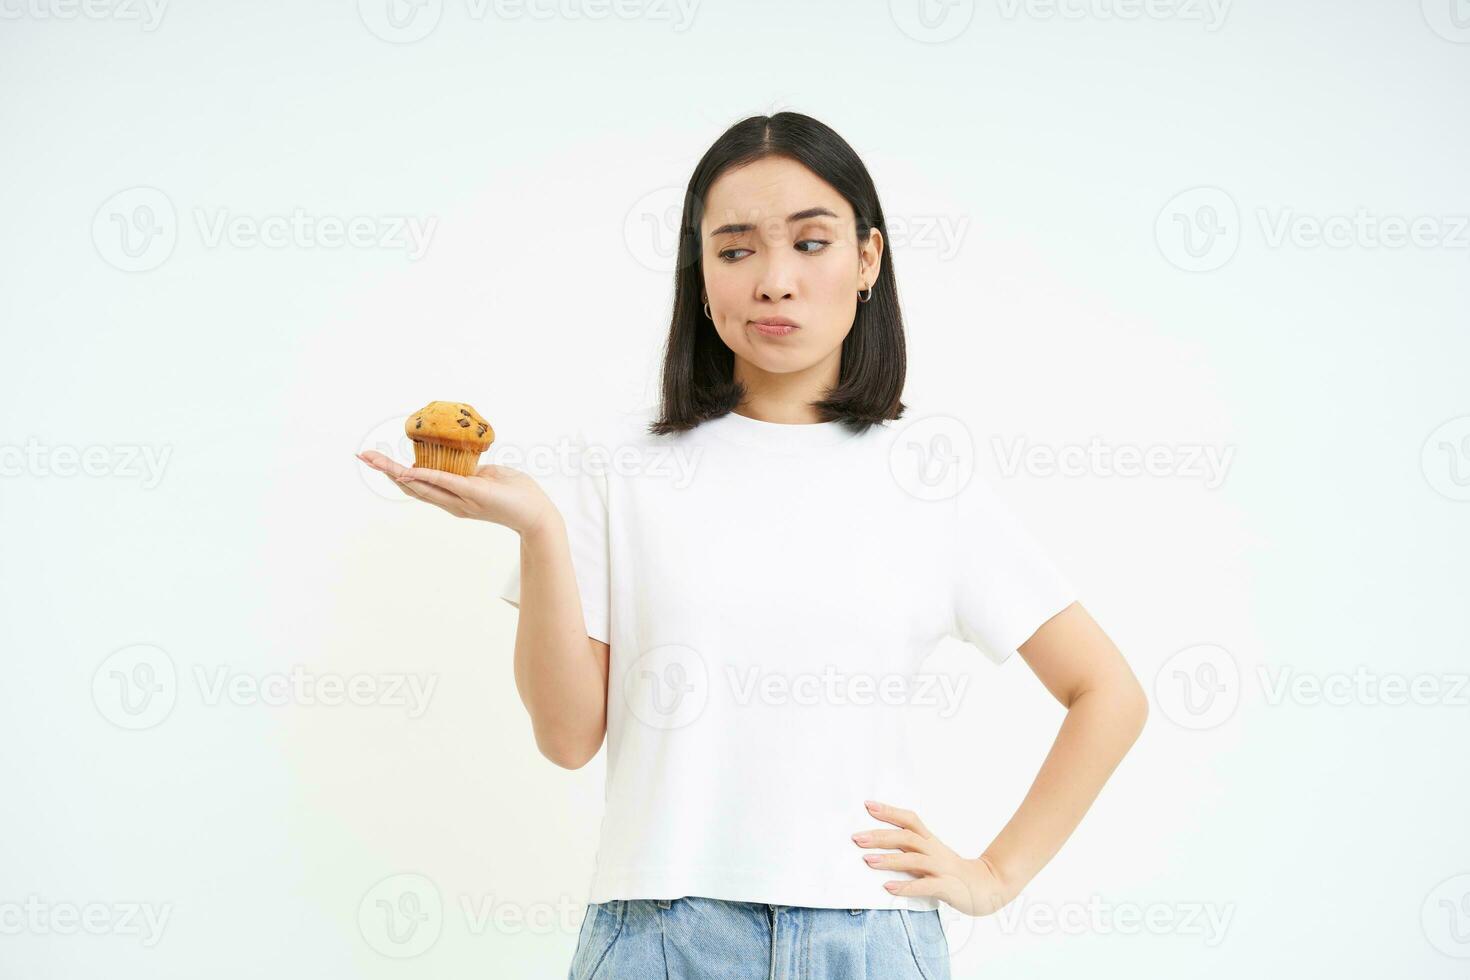 imagem do coreano garota, olhando às Bolinho e pensamento, fazer decisão, branco fundo foto